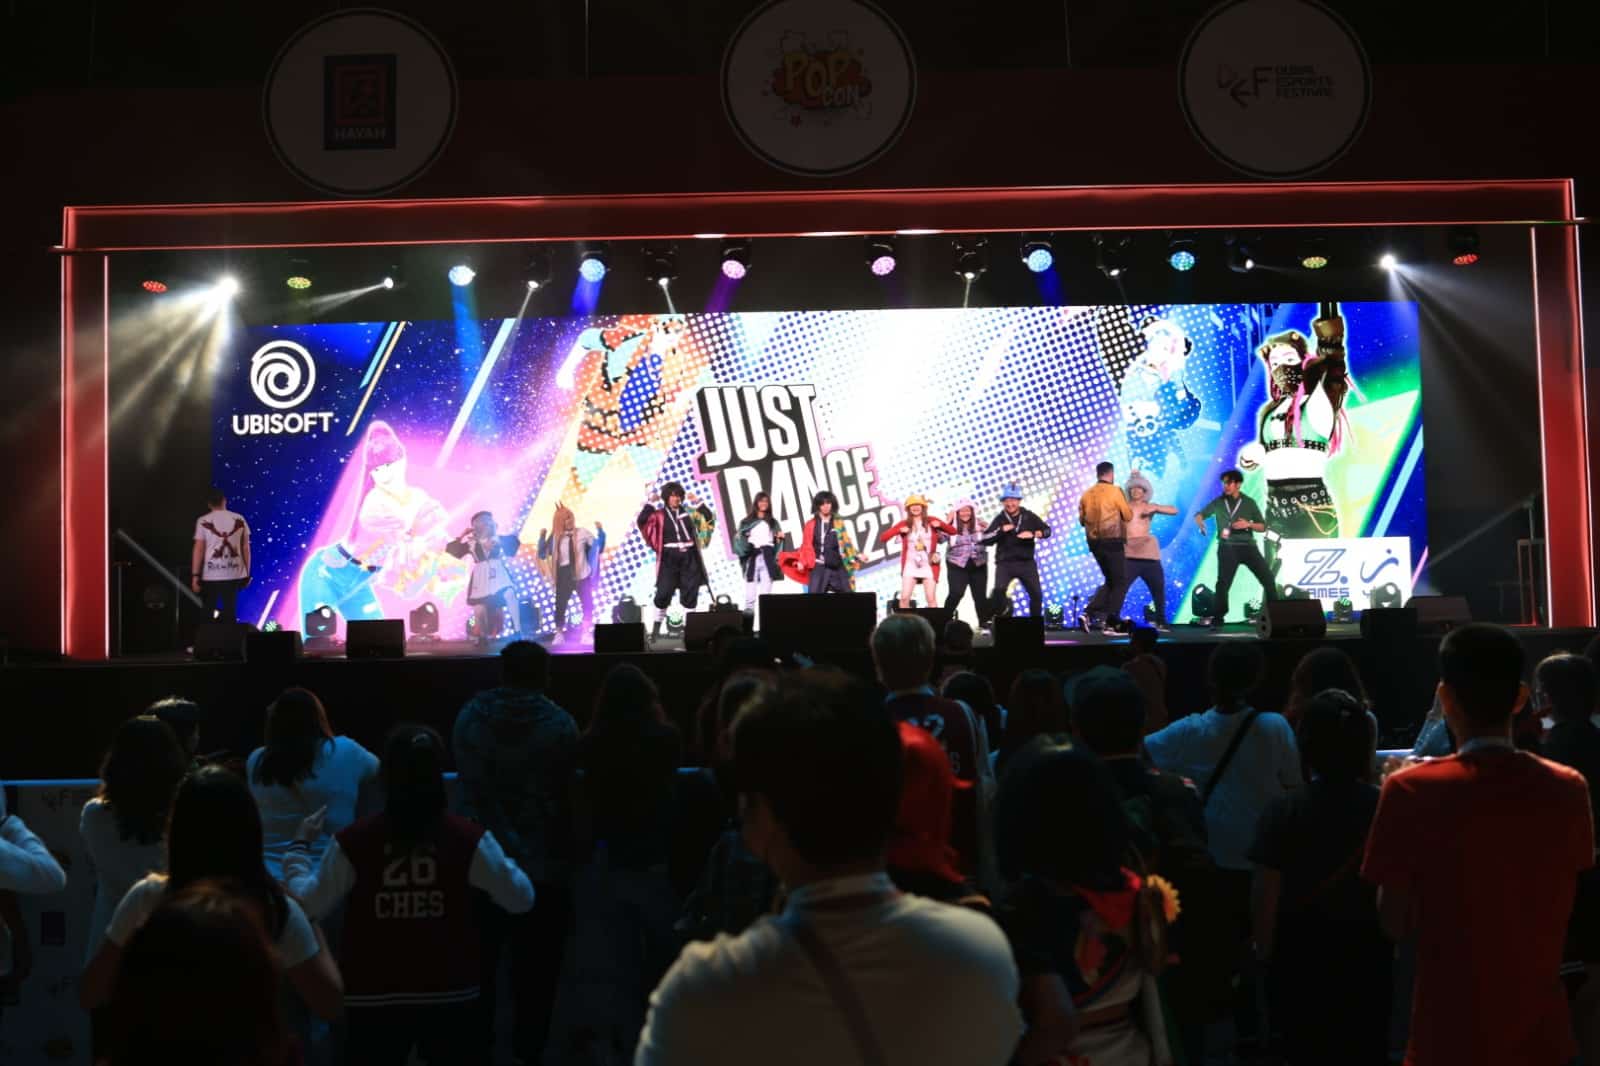 दुबई डिजिटल गेम्स एंड स्पोर्ट्स फेस्टिवल 21 से 25 जून तक अपने दूसरे संस्करण के लिए लौटेगा